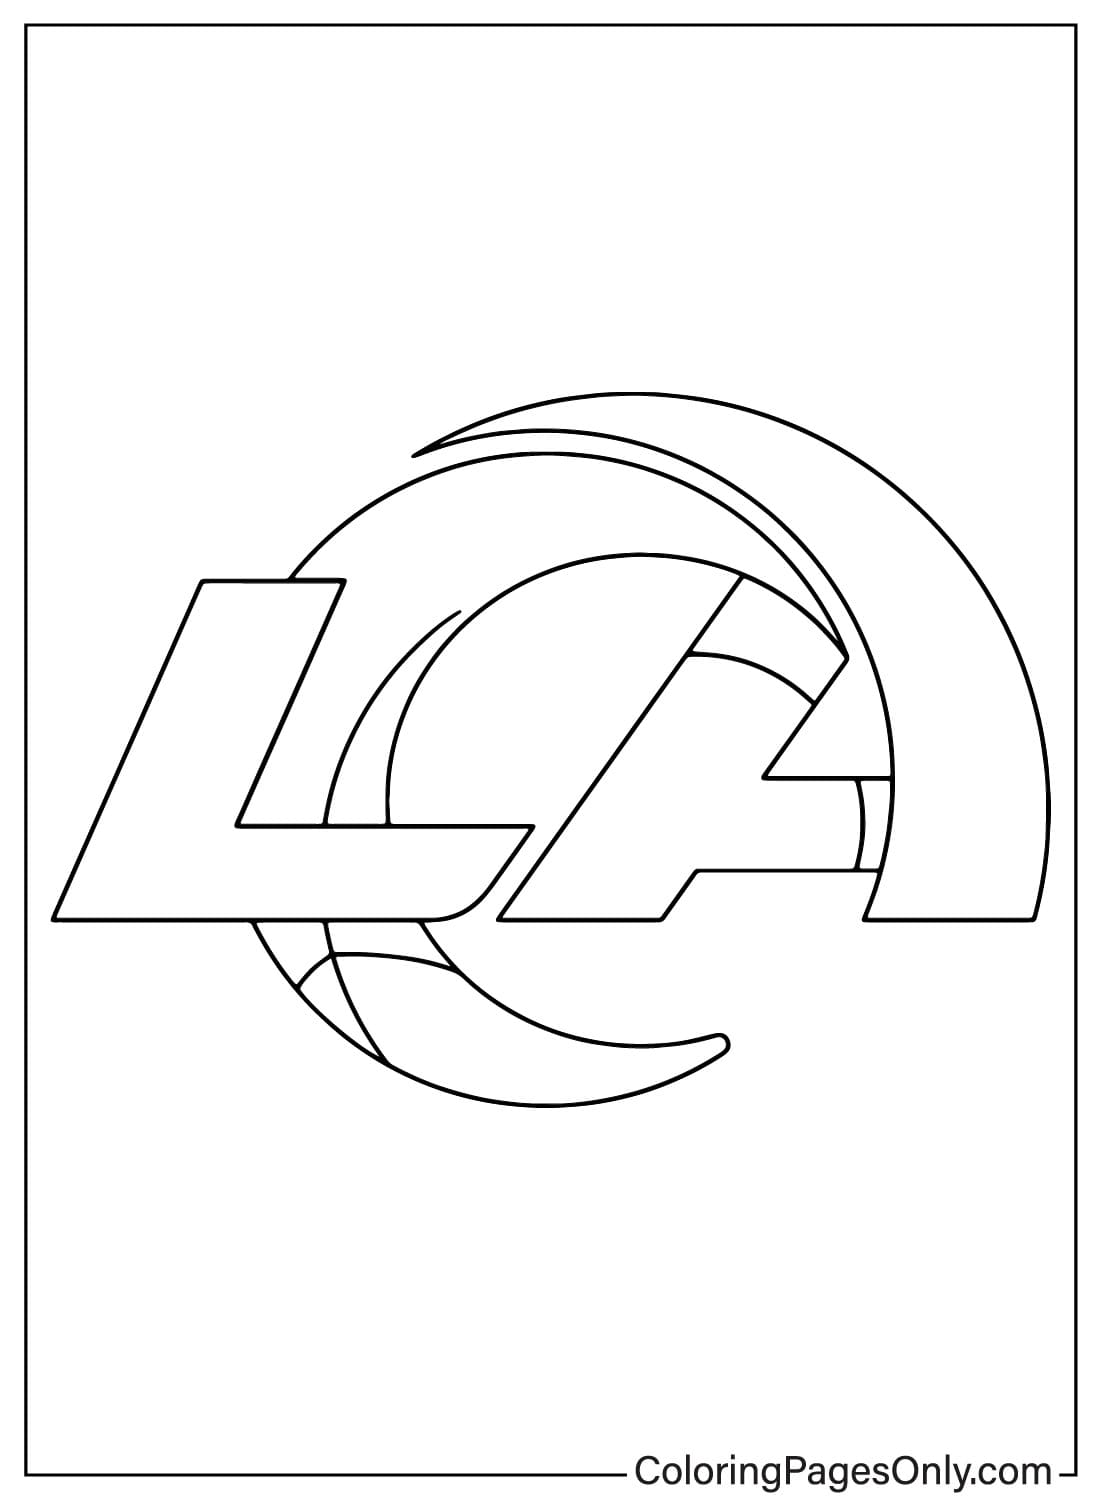 Página para colorear del logotipo de Los Angeles Rams de la NFL